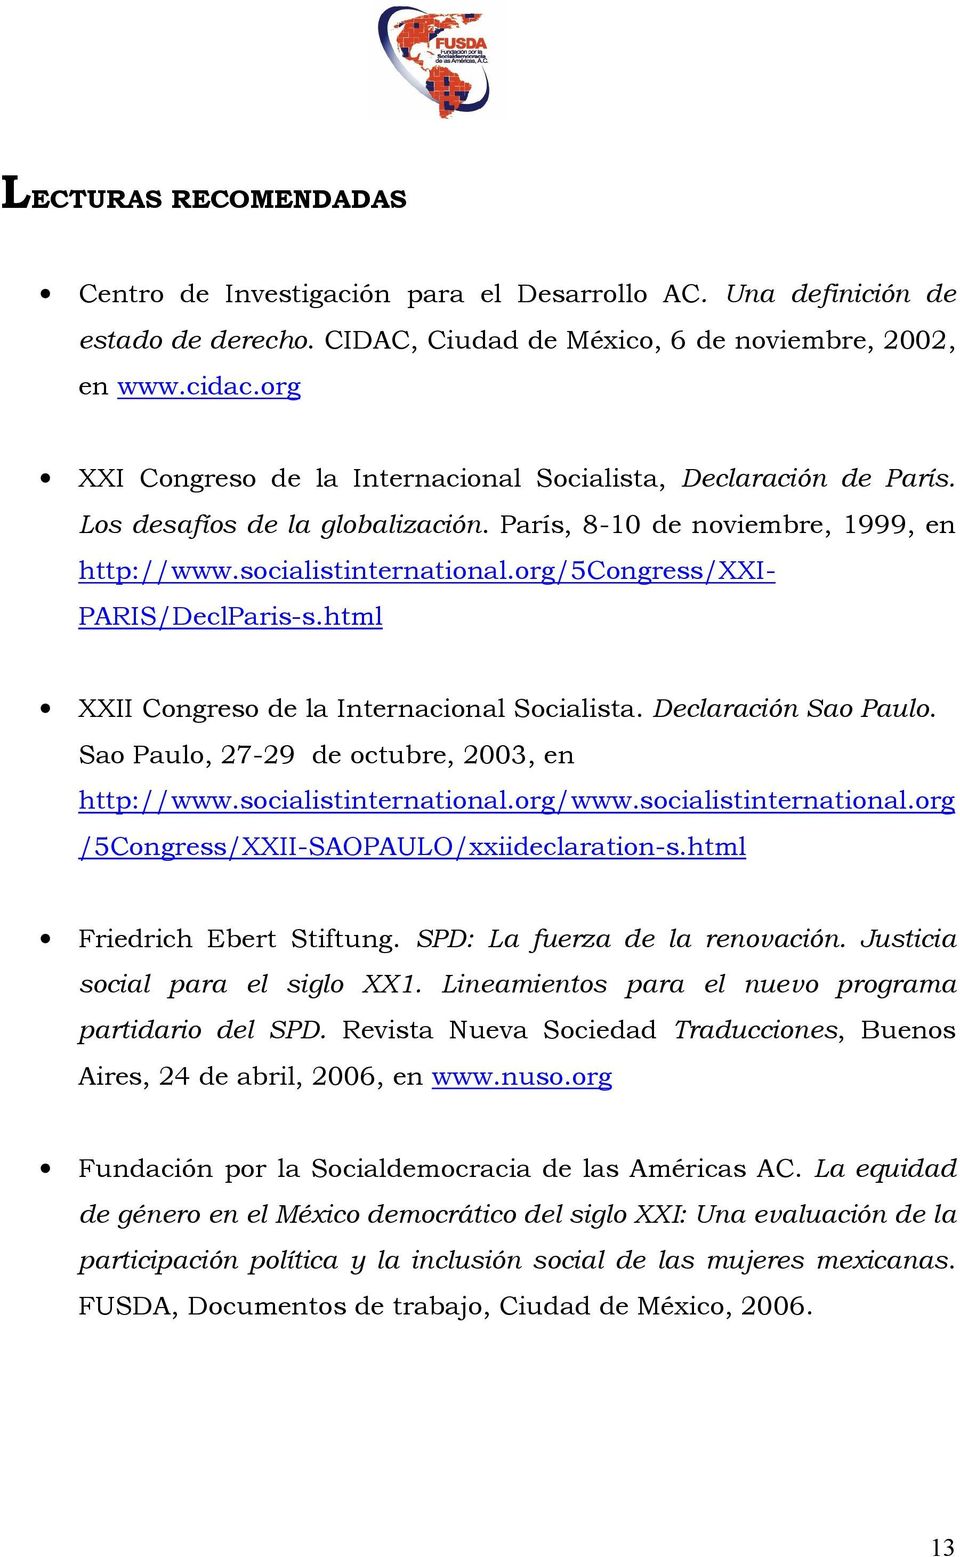 org/5congress/xxi- PARIS/DeclParis-s.html XXII Congreso de la Internacional Socialista. Declaración Sao Paulo. Sao Paulo, 27-29 de octubre, 2003, en http://www.socialistinternational.org/www.